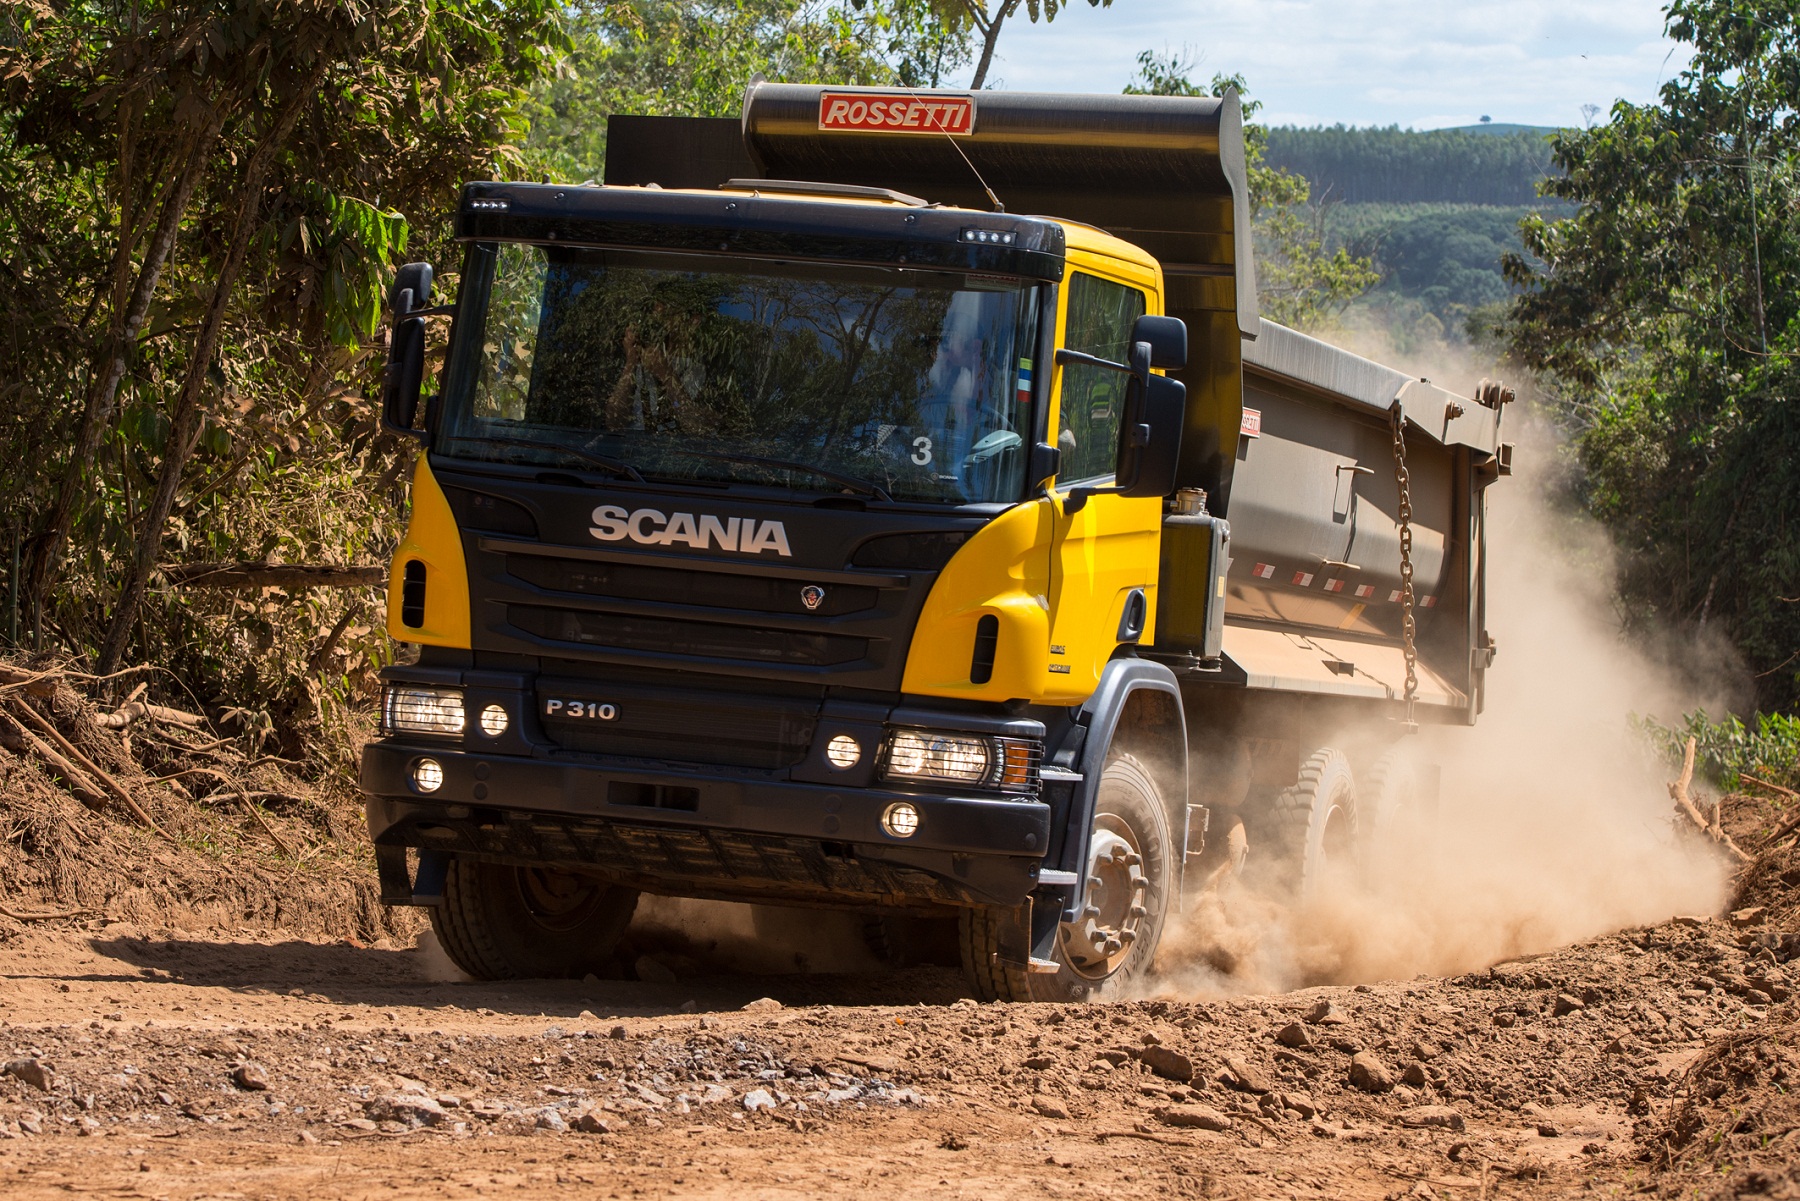 Caminhão P 310 é o destaque da Scania na Construction Expo